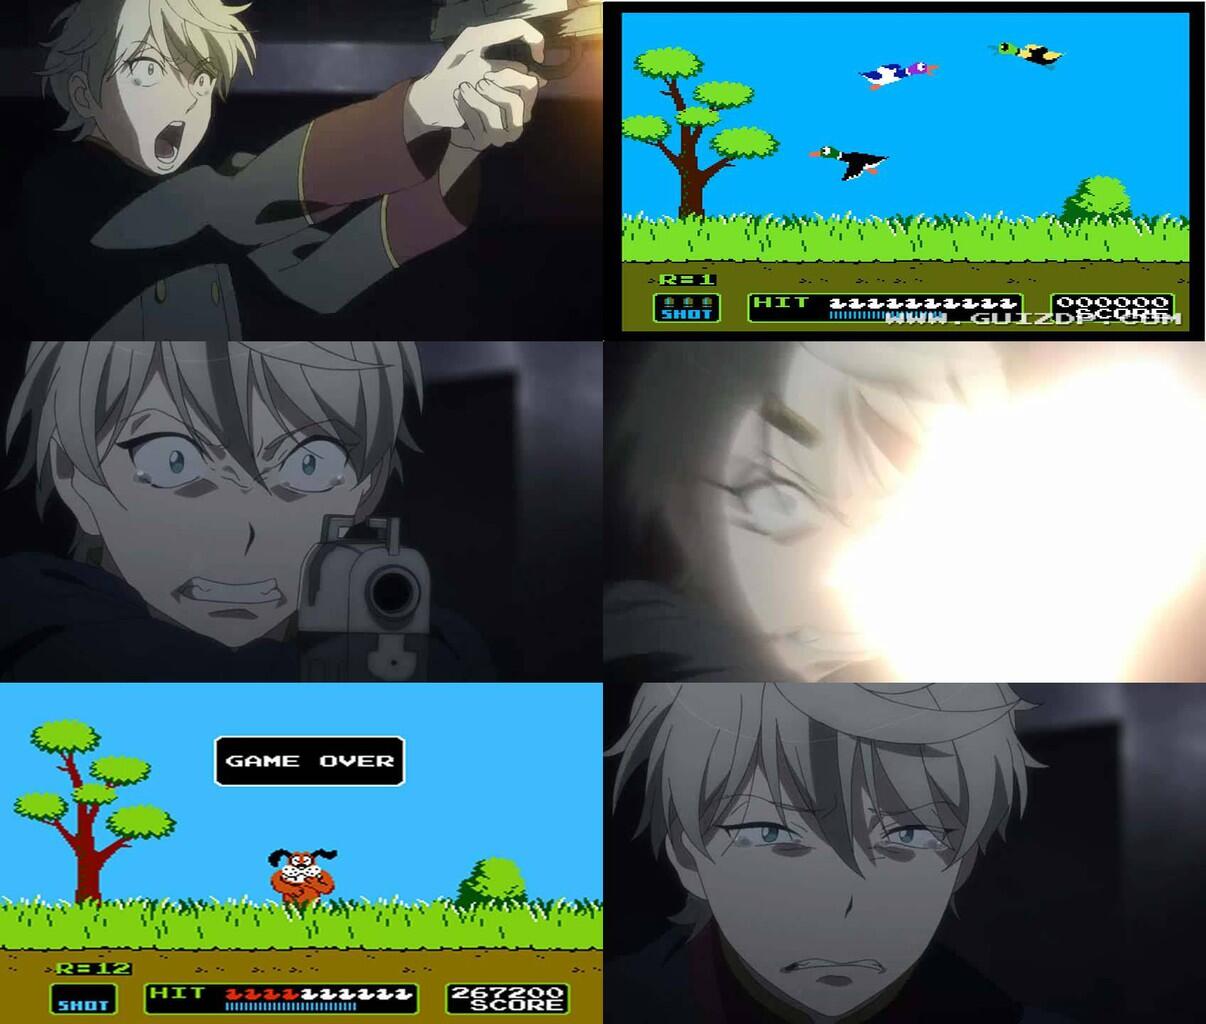 Kumpulan Meme Anime Yang Bikin Ngakak Update Terus KASKUS